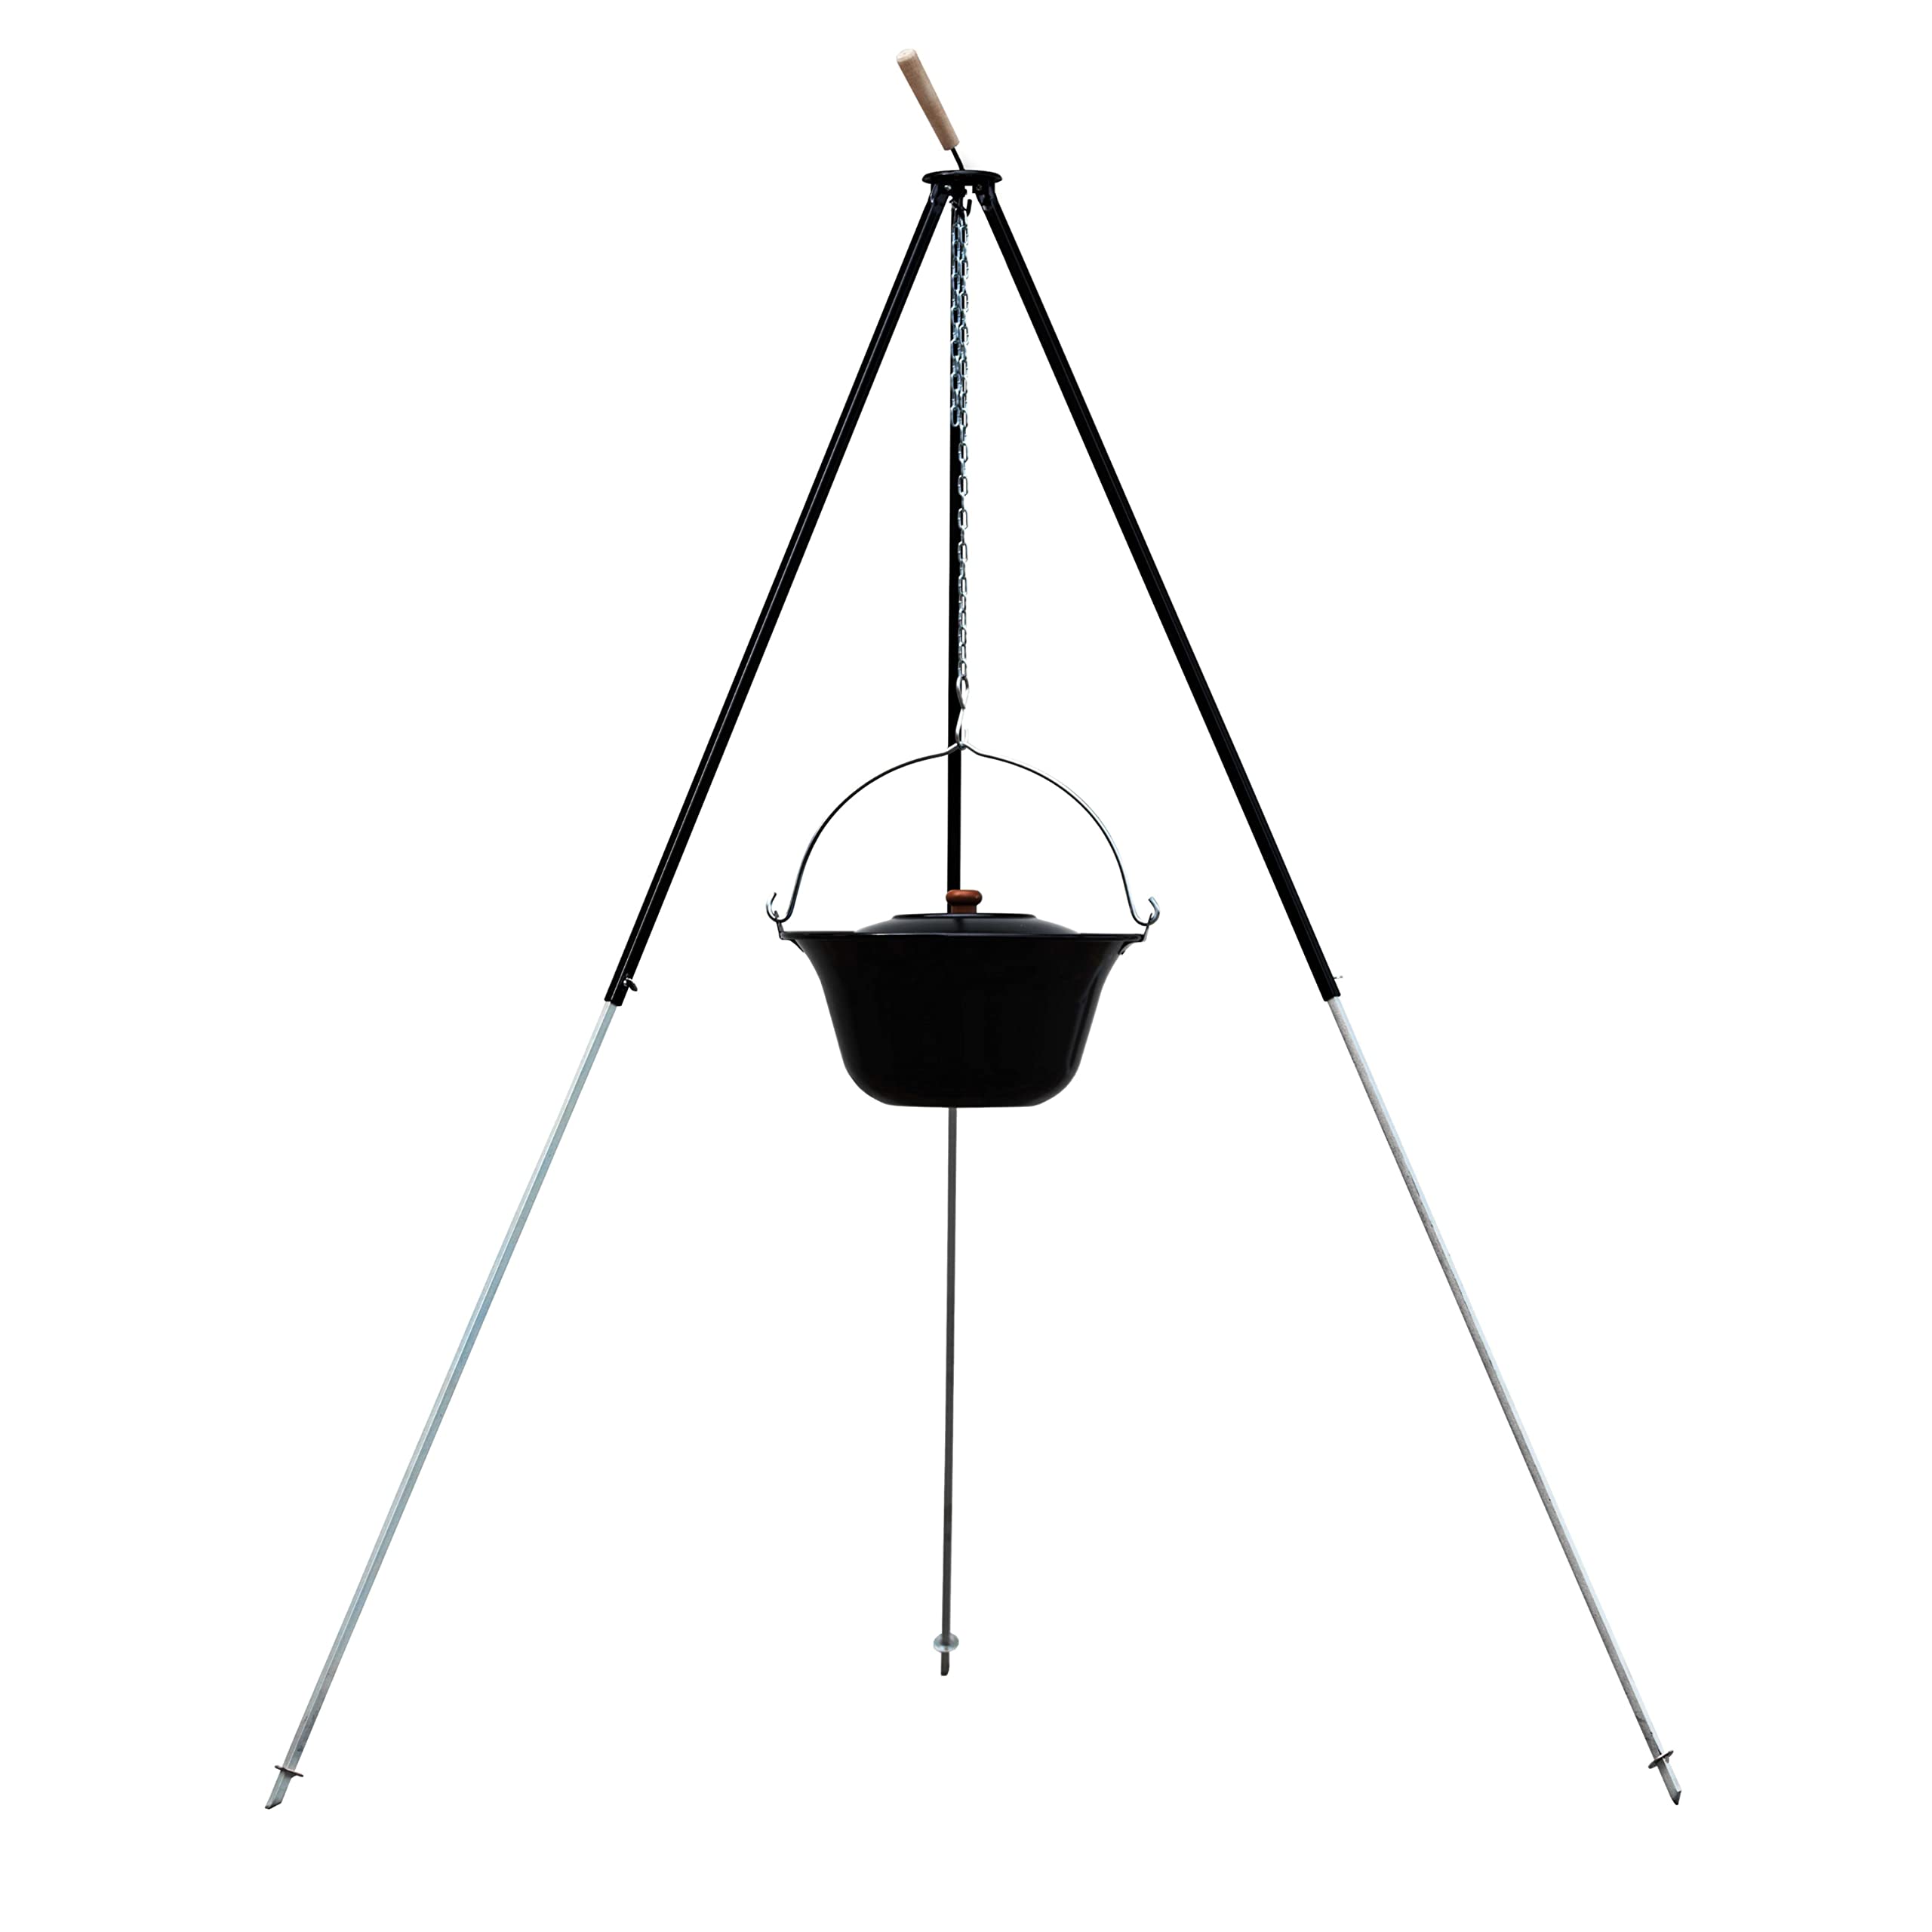 Czaja Feuerschalen® Dreibein mit Kessel 180 cm und 10 Liter Gulaschkessel für Feuerschale - Ungarischer Gulaschtopf mit Teleskop Dreibein für Feuerschale und Feuerstelle